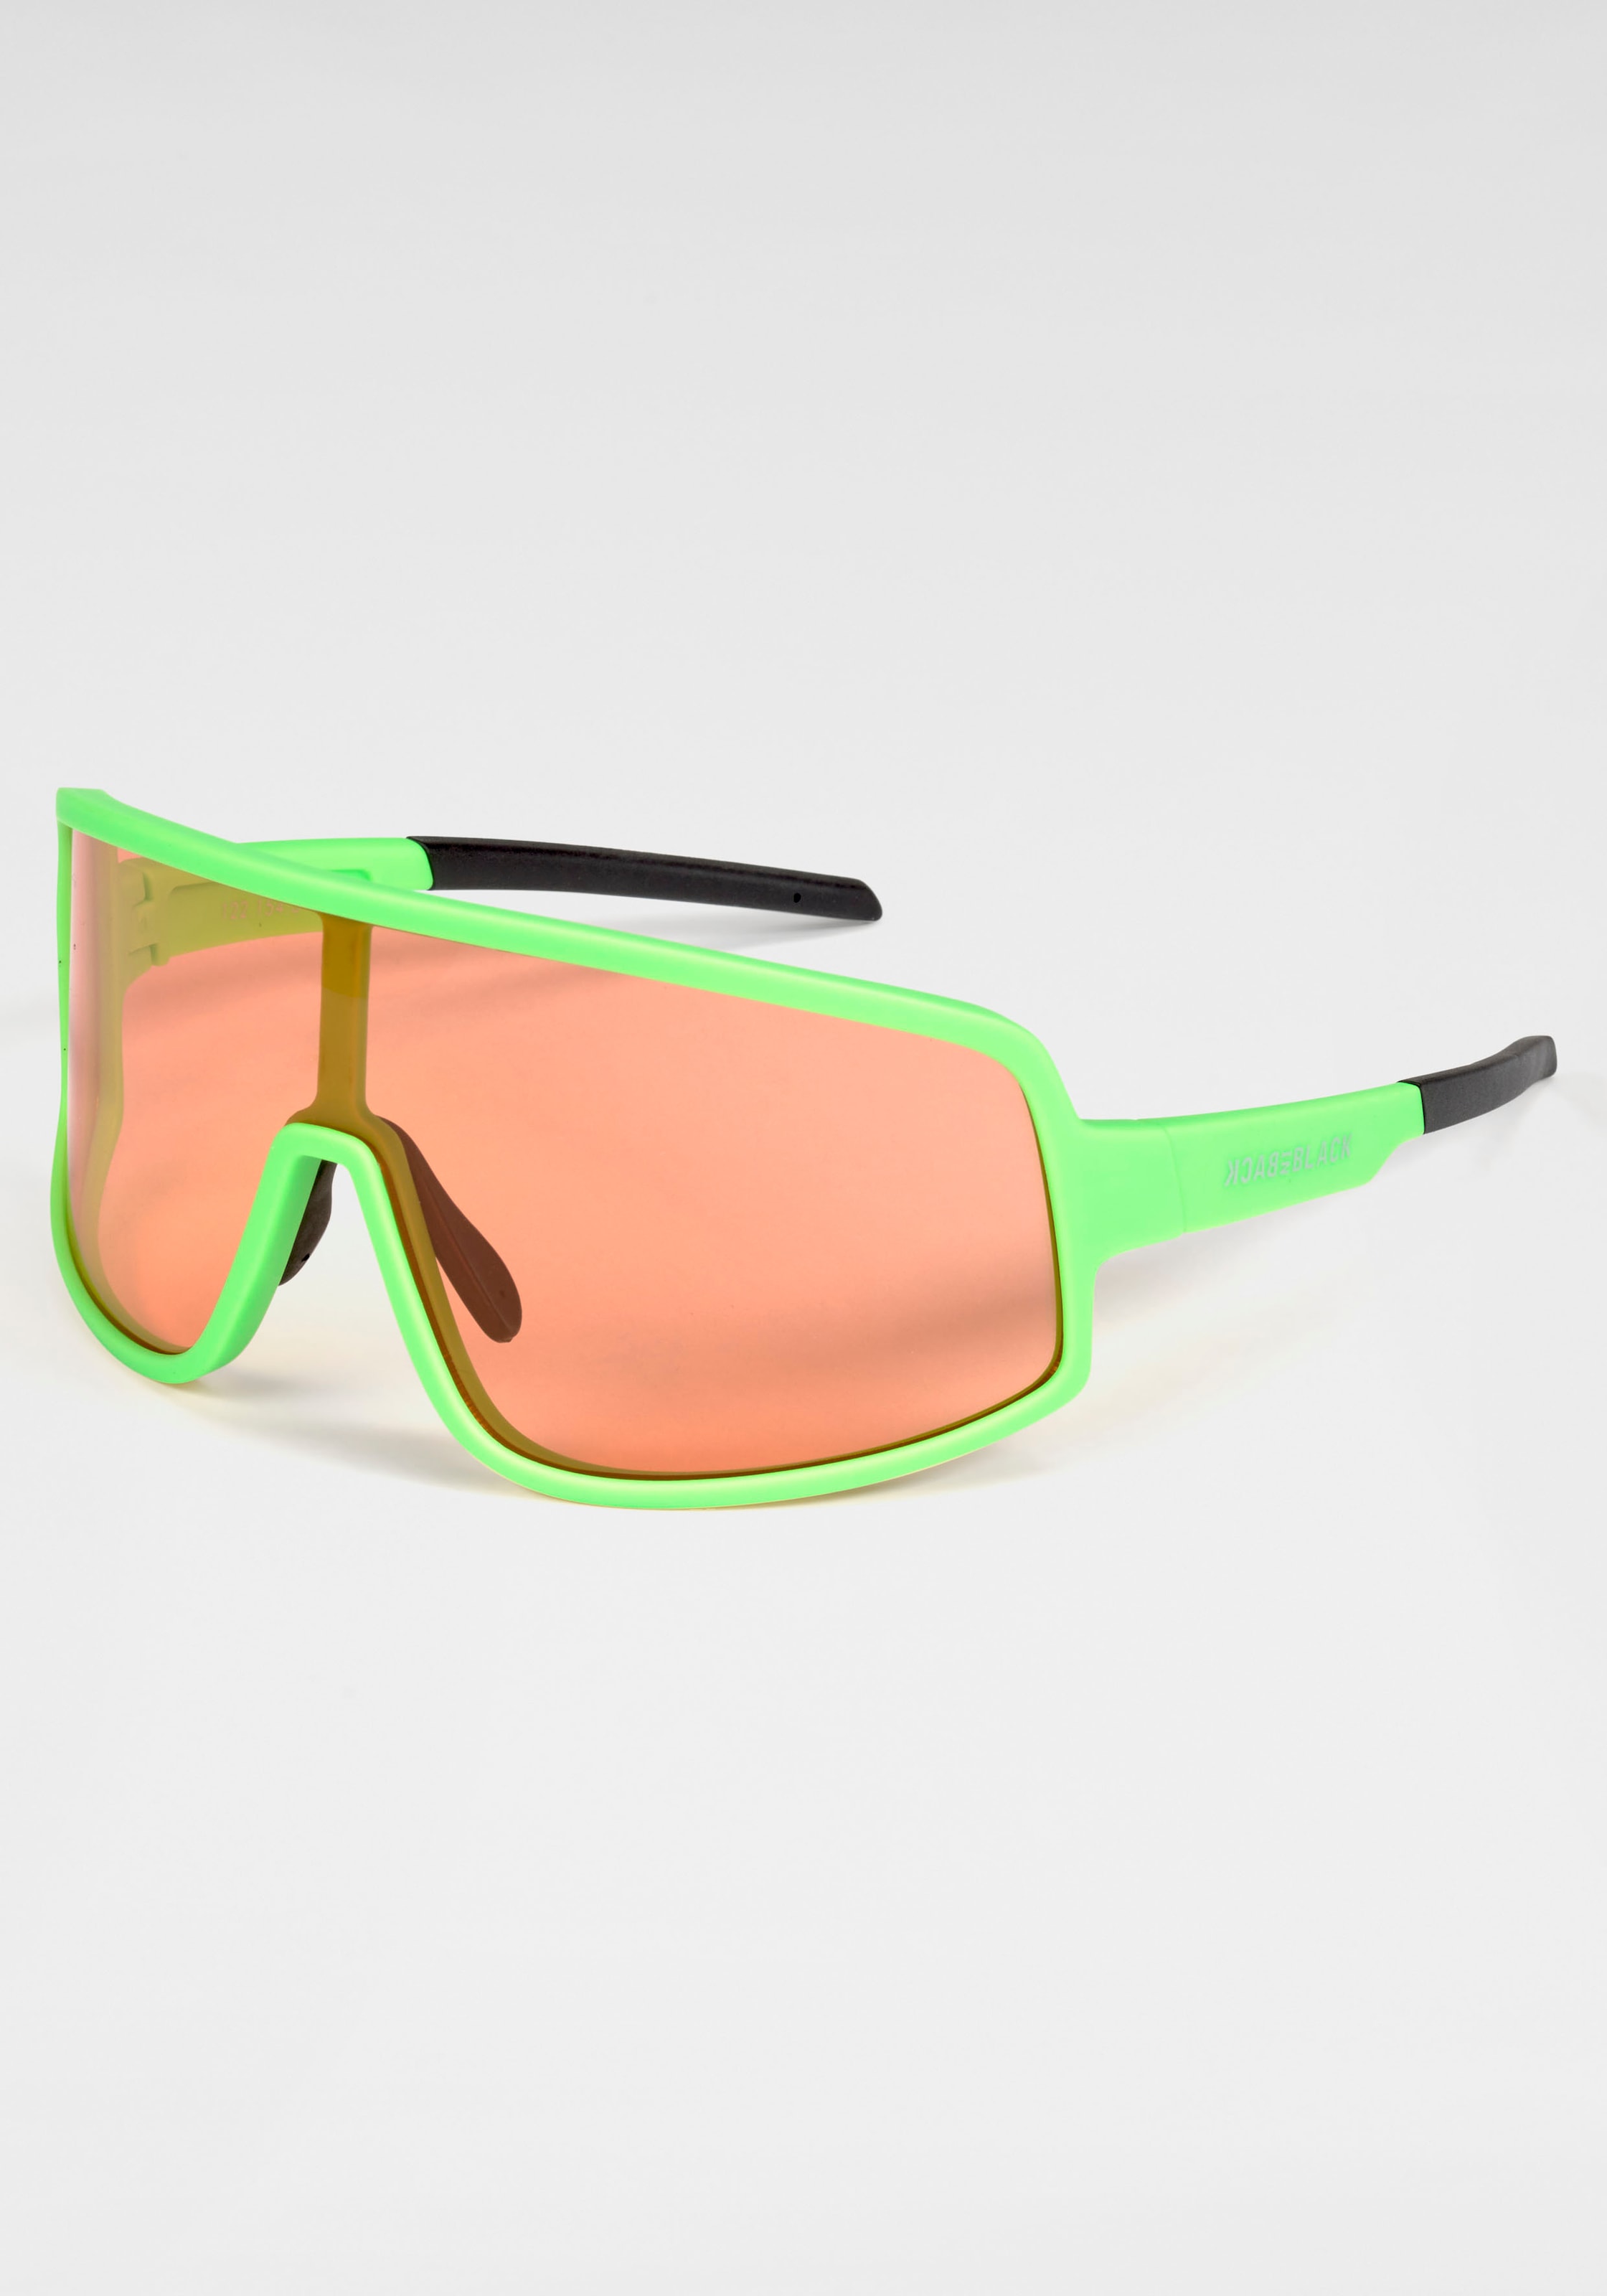 Sonnenbrille, stylische Sportbrille